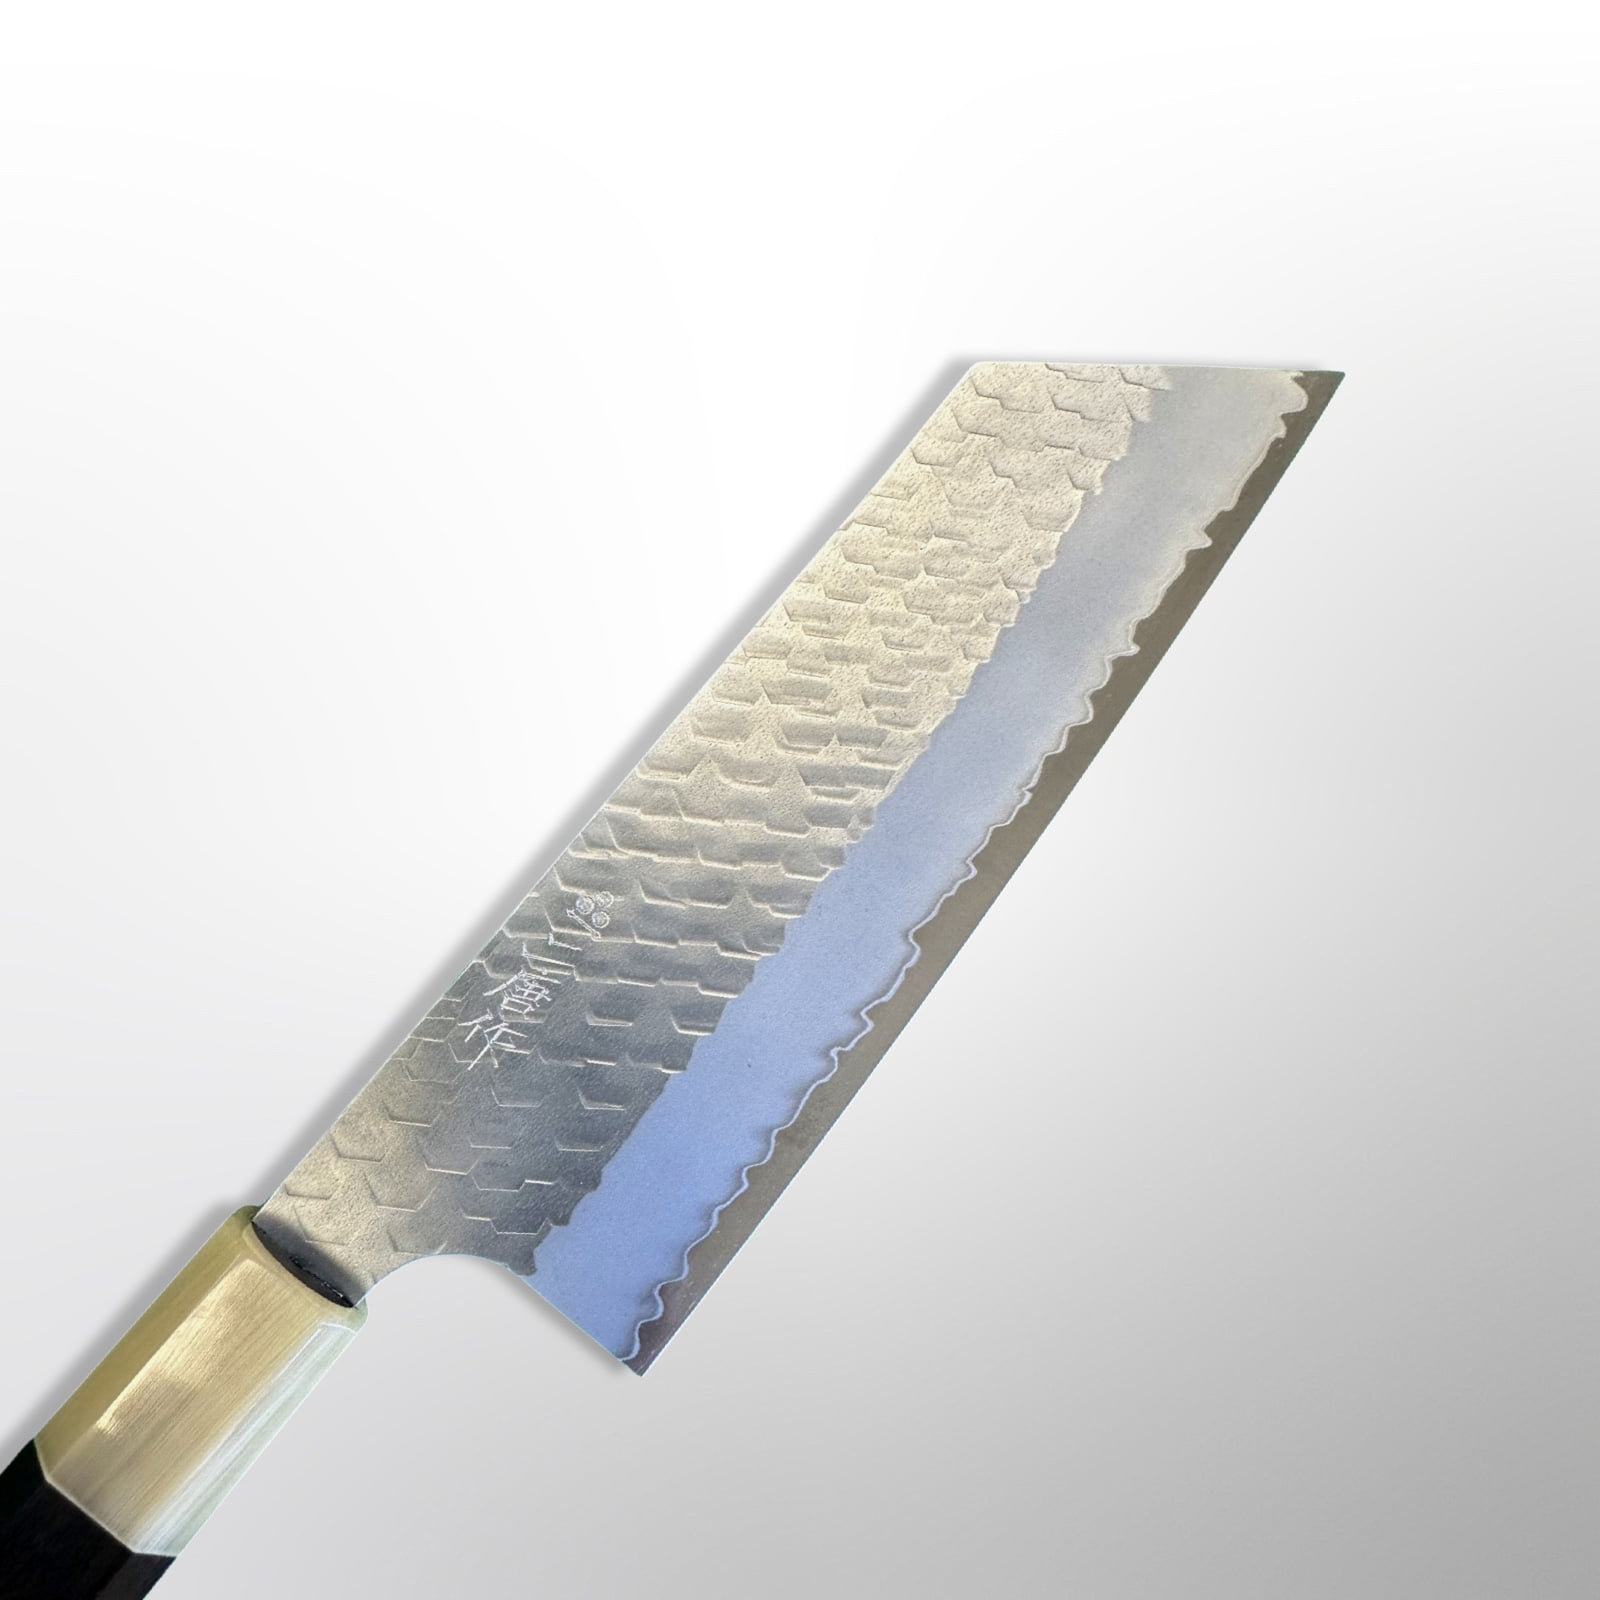 סכין ירקות קיריצוקה נקירי 165מ״מ מחושלת בעבודת יד 3 שכבות: פלדת פחמן יפנית מתקדמת מסוג R2/SG2 עטופה פלדת אל-חלד גימור מיגאקי מבריק עם ריקוע פטיש ניגארה יפן